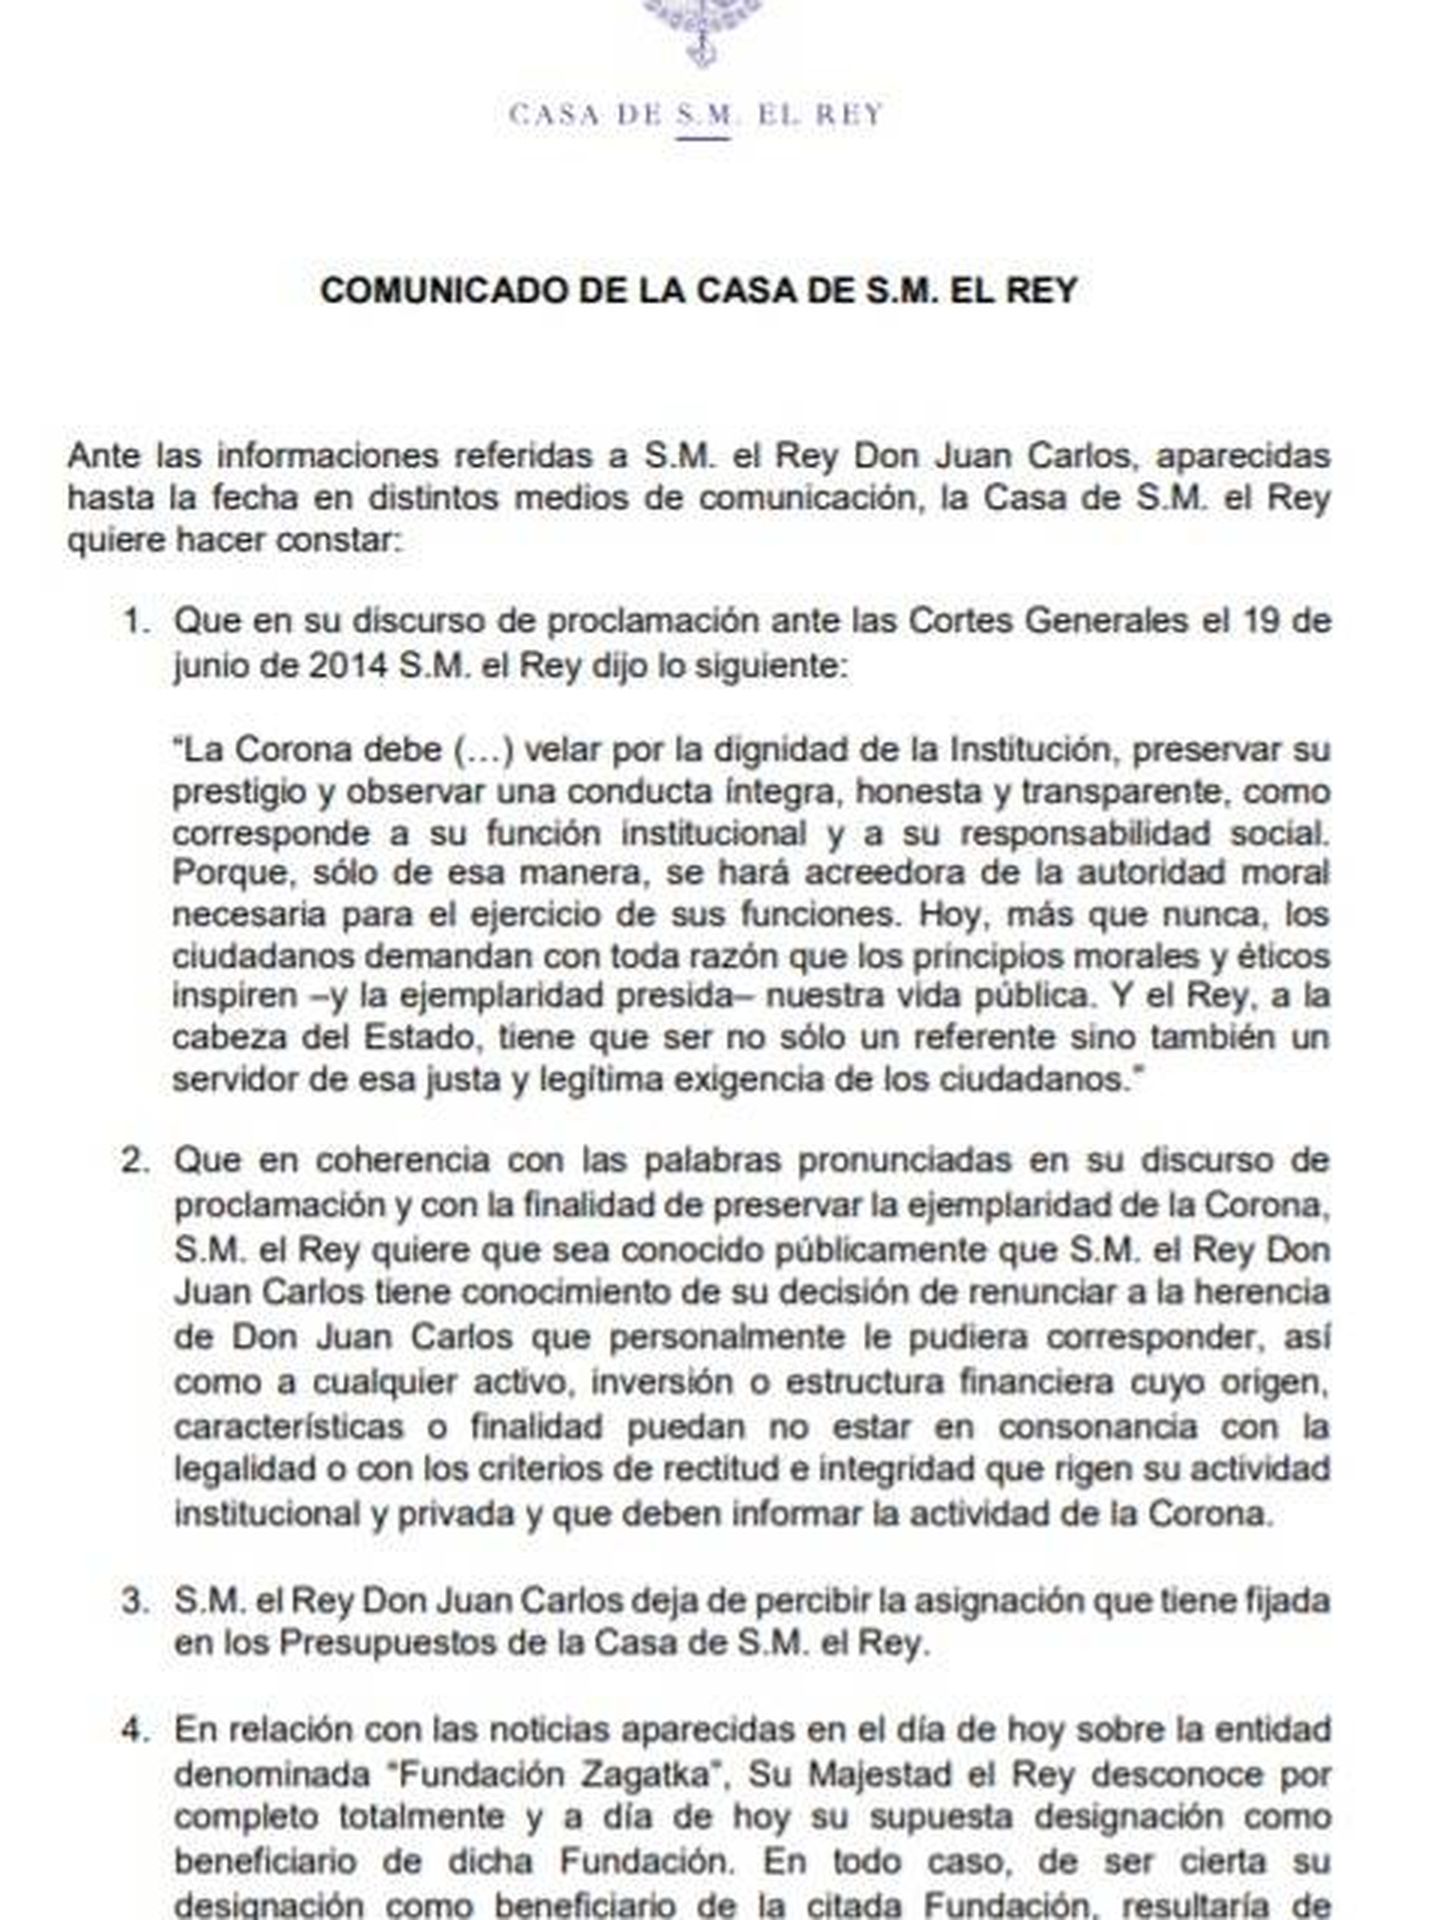 Consulte aquí en PDF el comunicado de Felipe VI por el que renuncia a la herencia de don Juan Carlos y le retira su asignación. 